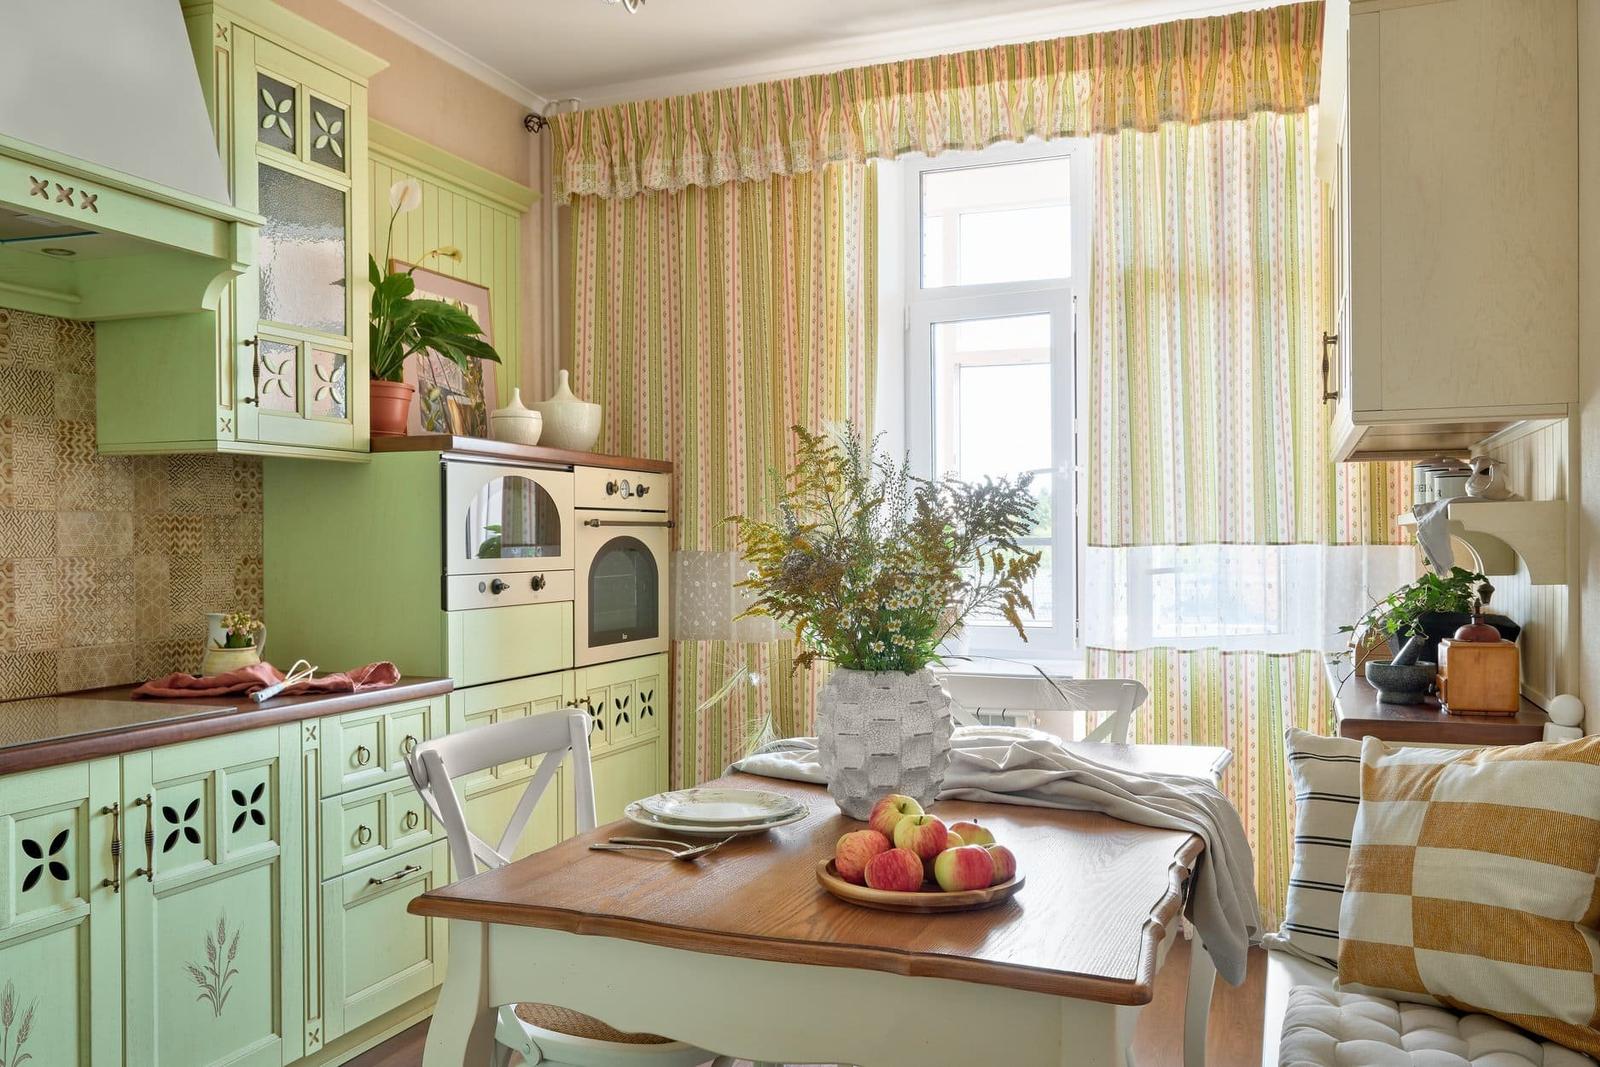 Byt se světle zelenou kuchyní - Bydlo.cz - inspirace bydlení, interiér, architektura